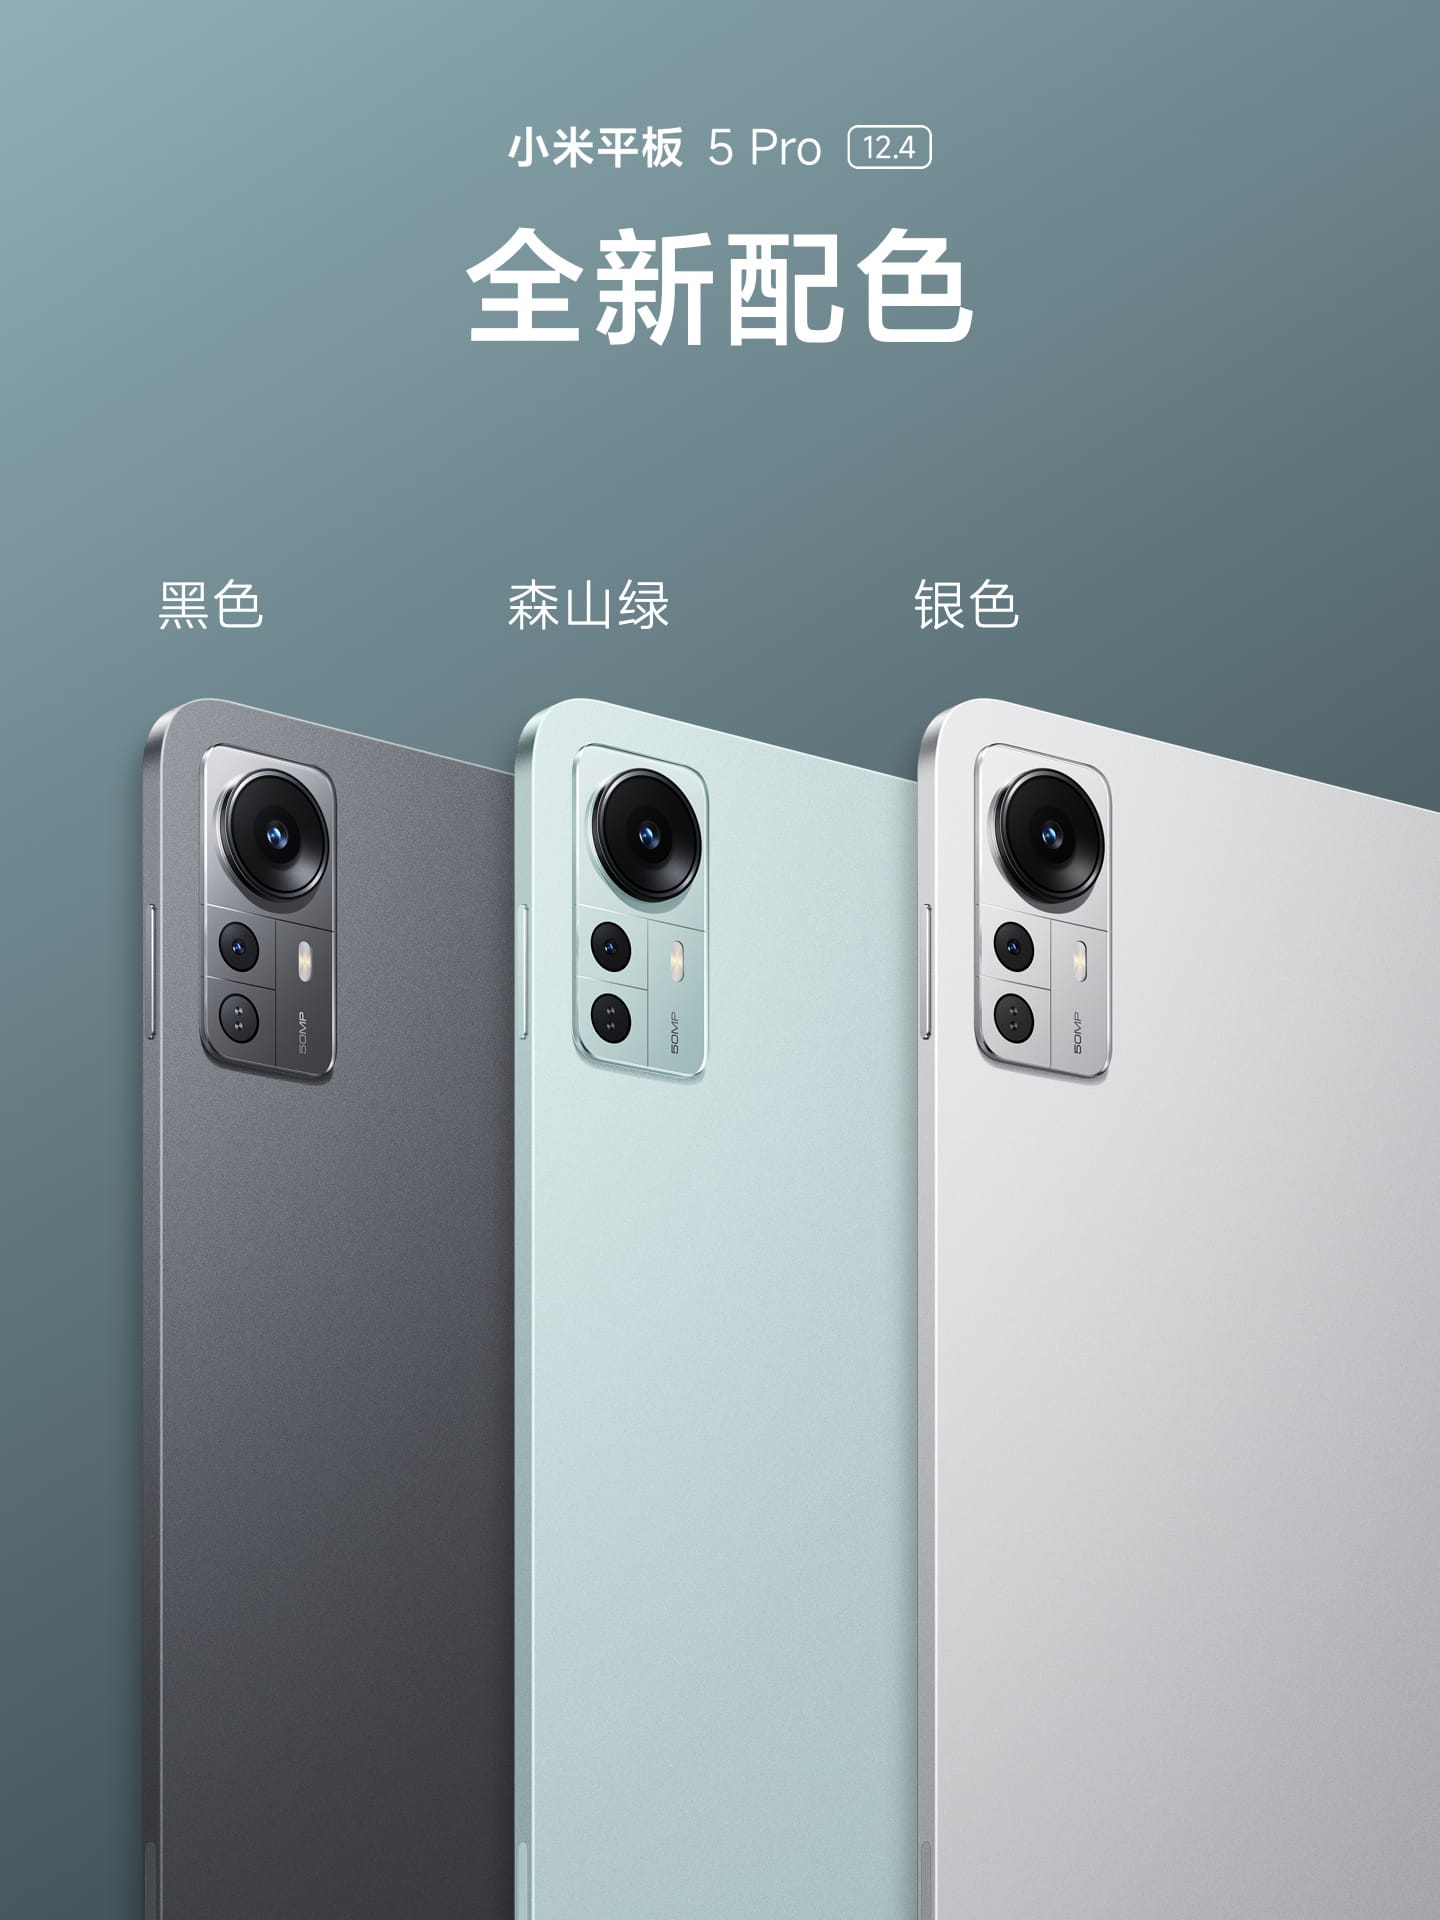 Xiaomi tablet colors